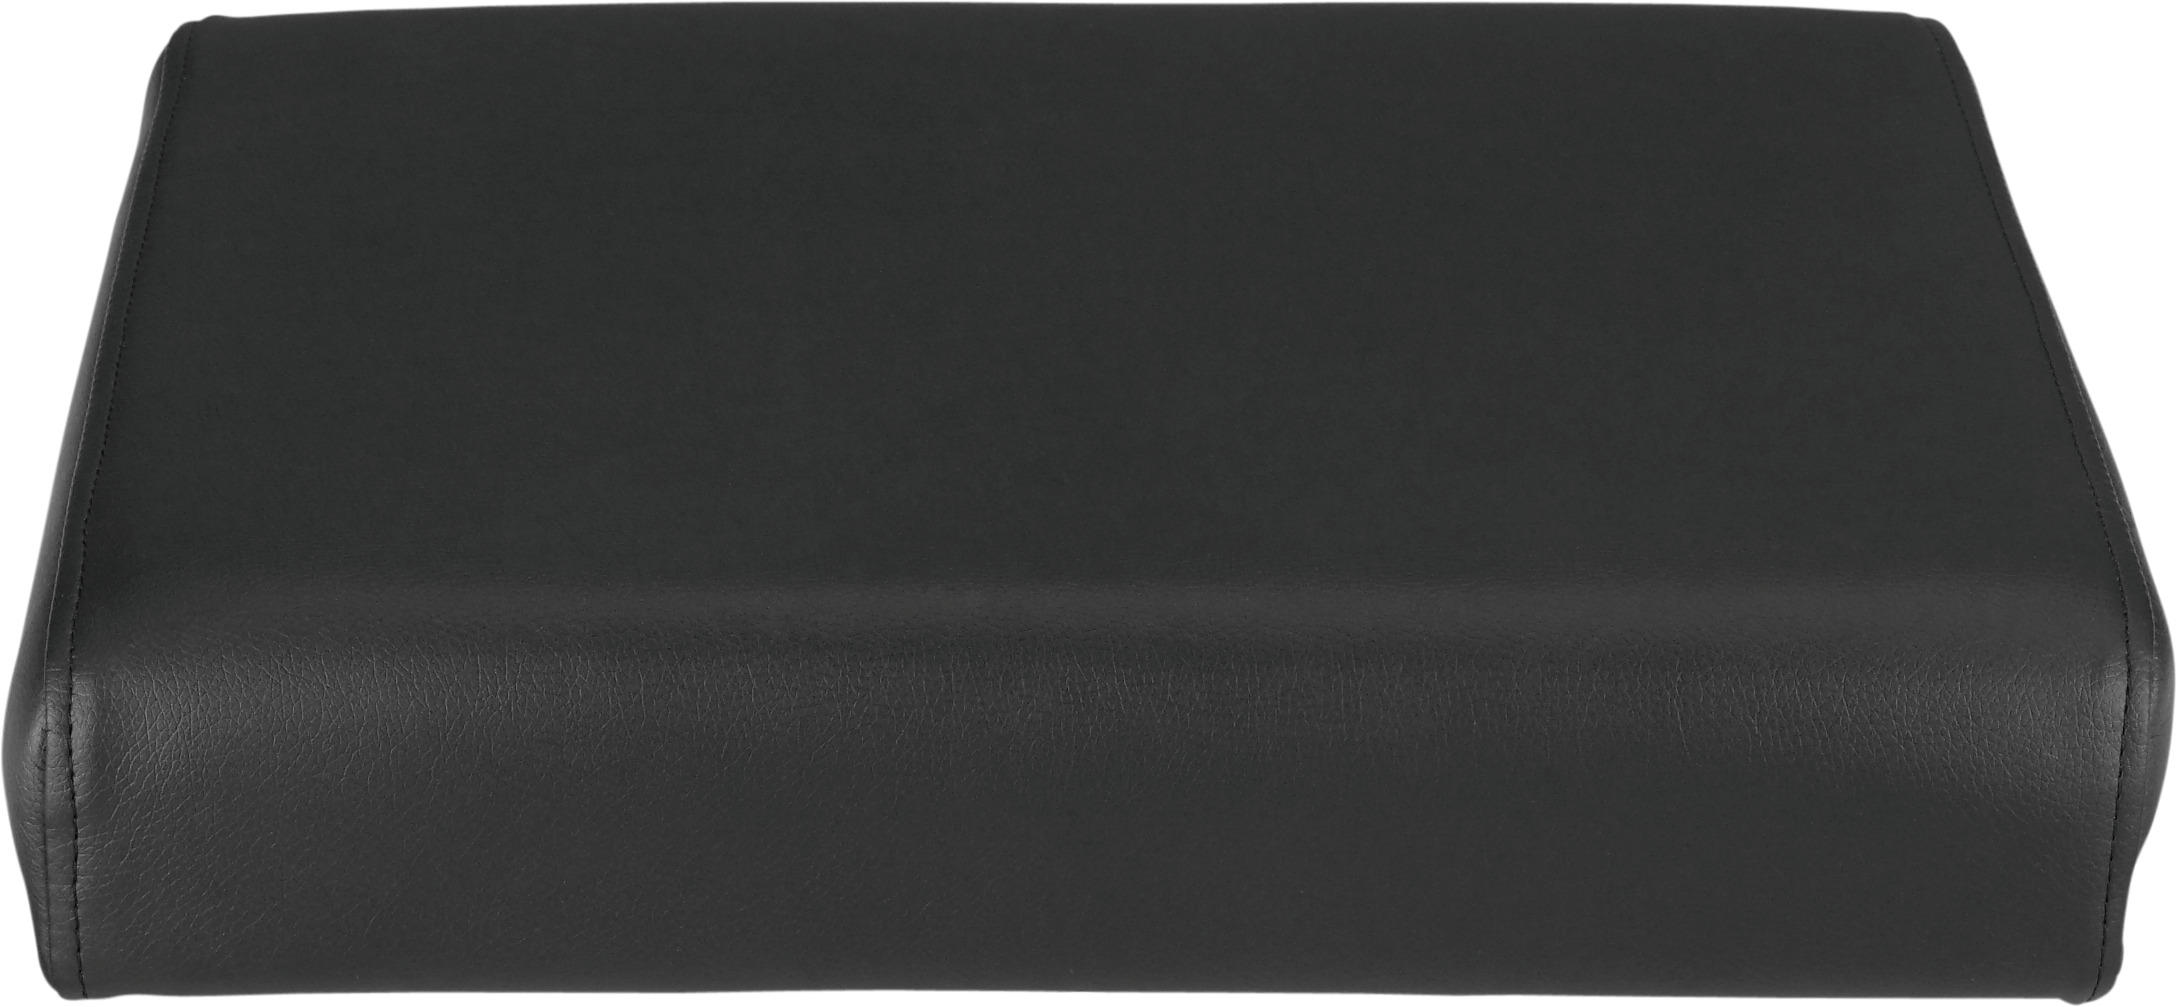 SITZKISSEN   40/5/38 cm  - Schwarz, Basics, Textil (40/5/38cm) - Carryhome